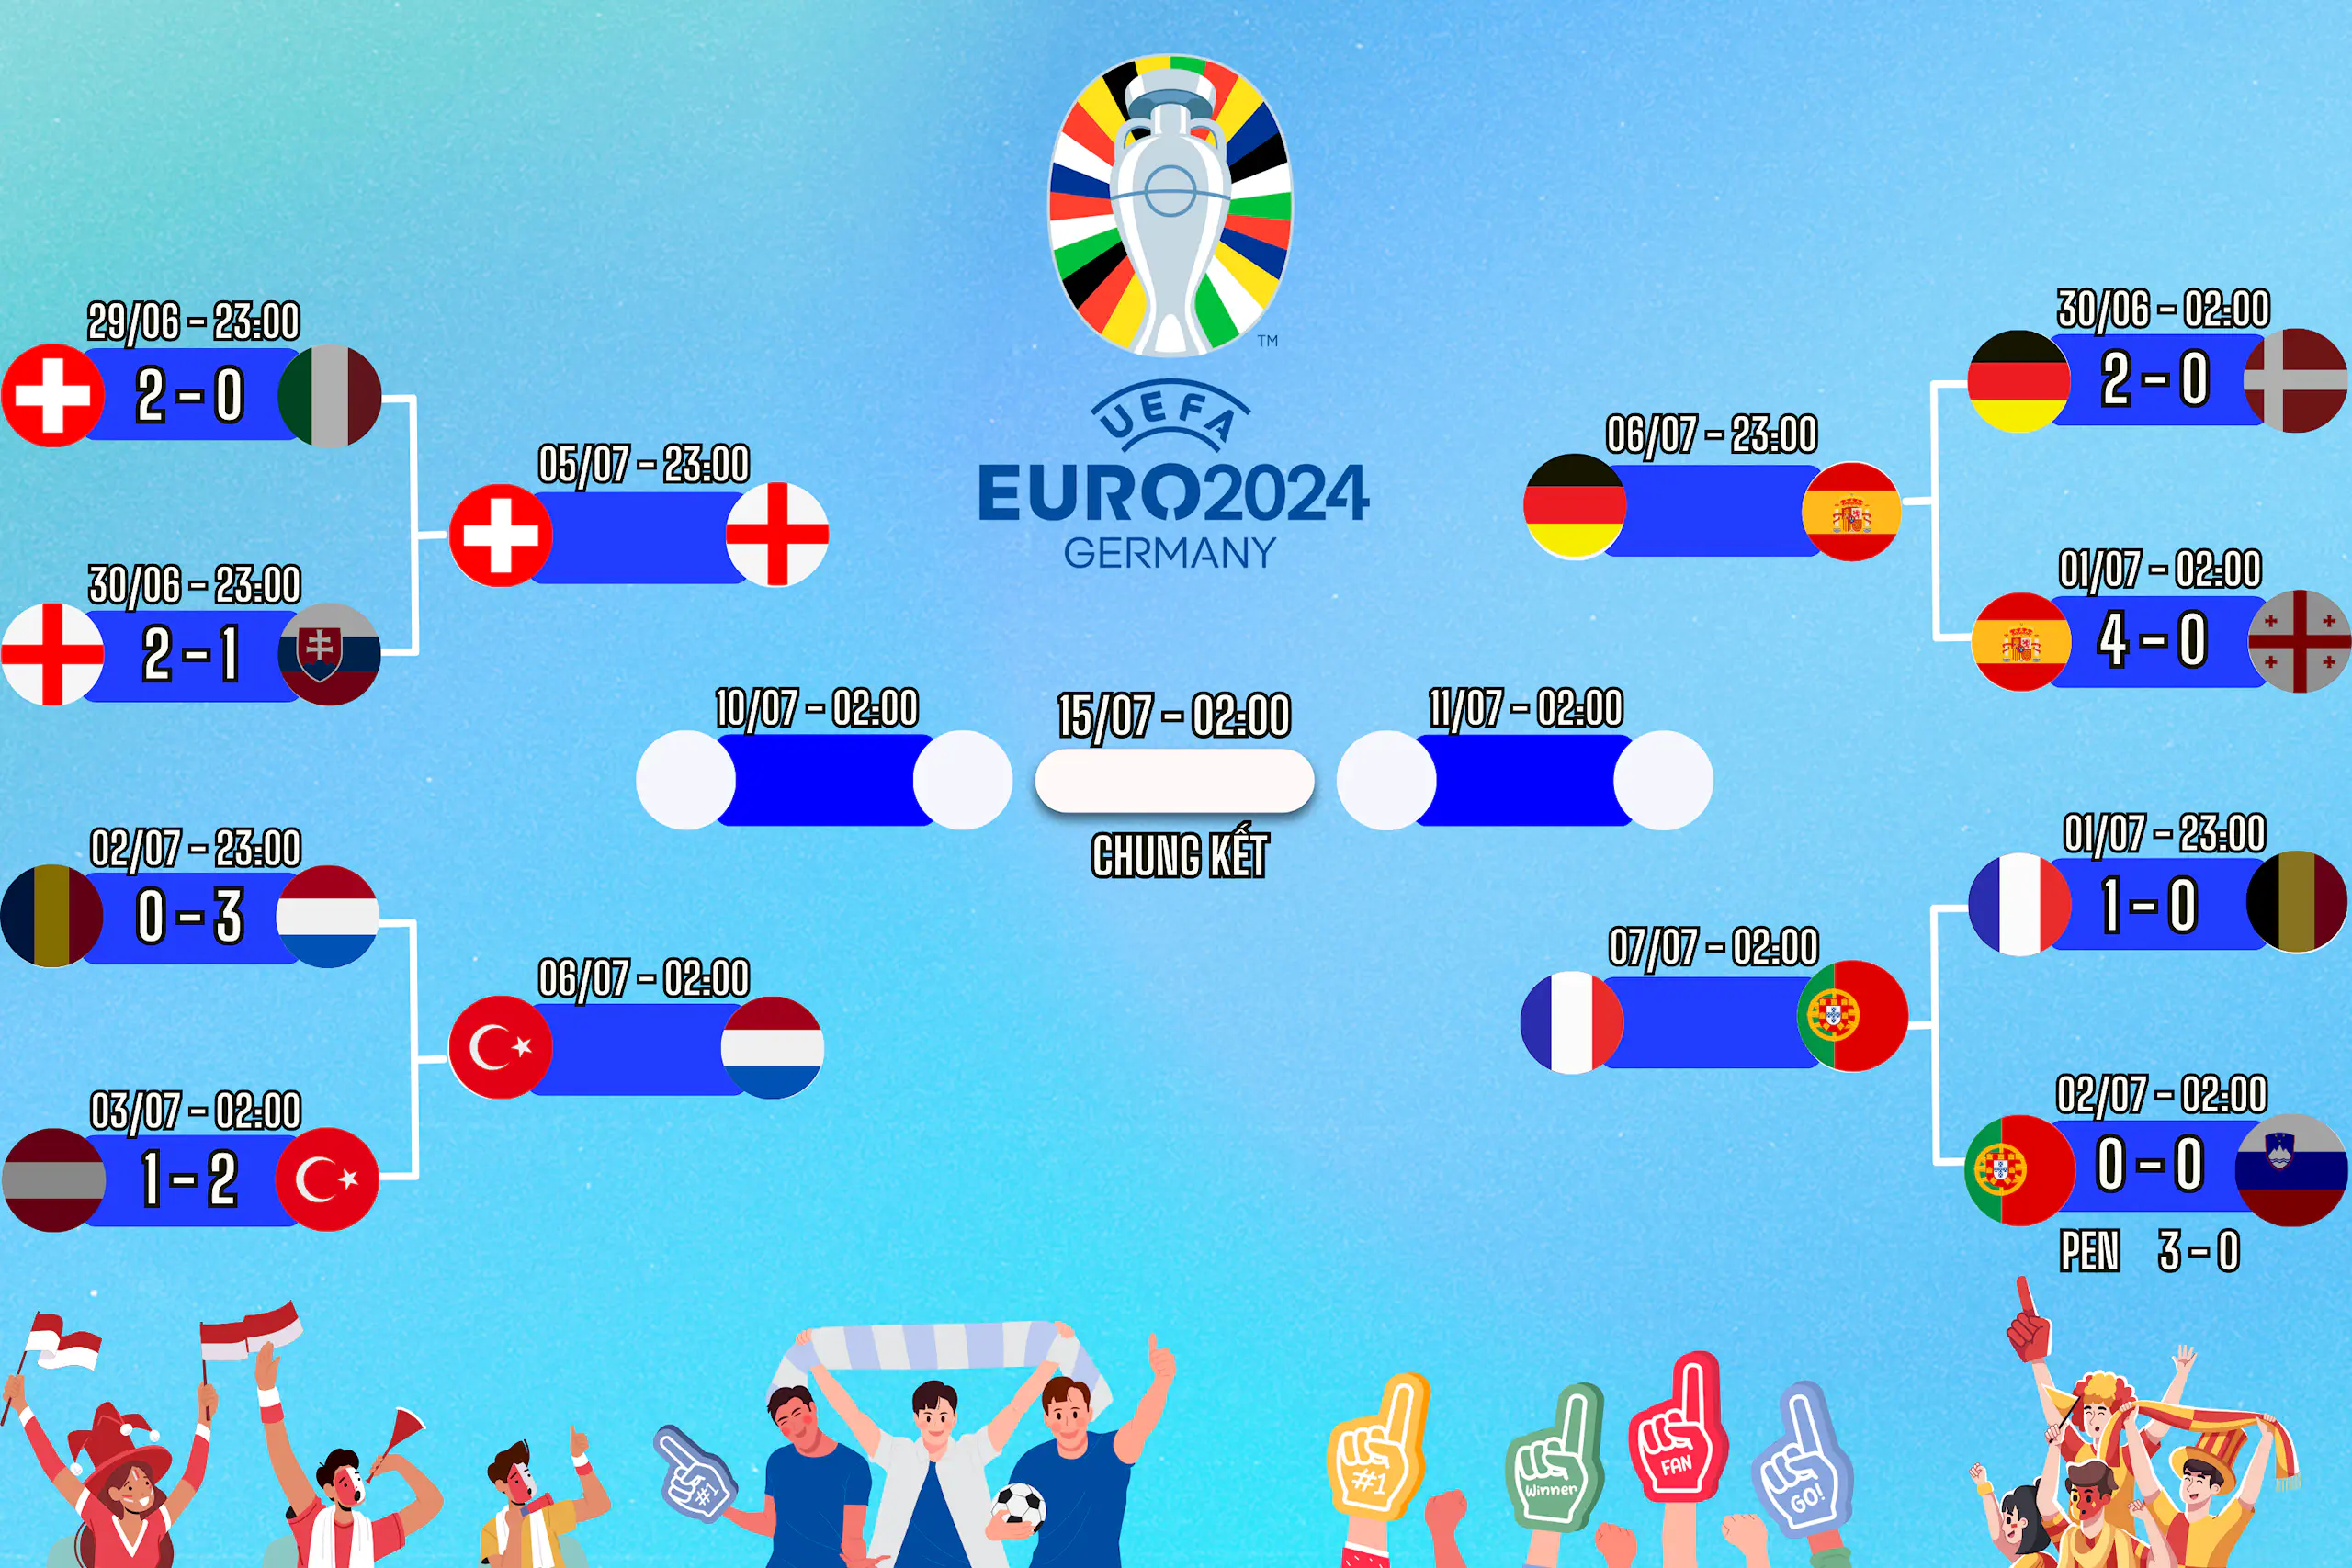 Lịch thi đấu vòng 1/8 EURO 2024 ngày 30/06, cập nhật kết quả và dự đoán tỉ số trận đấu cùng Congngheviet